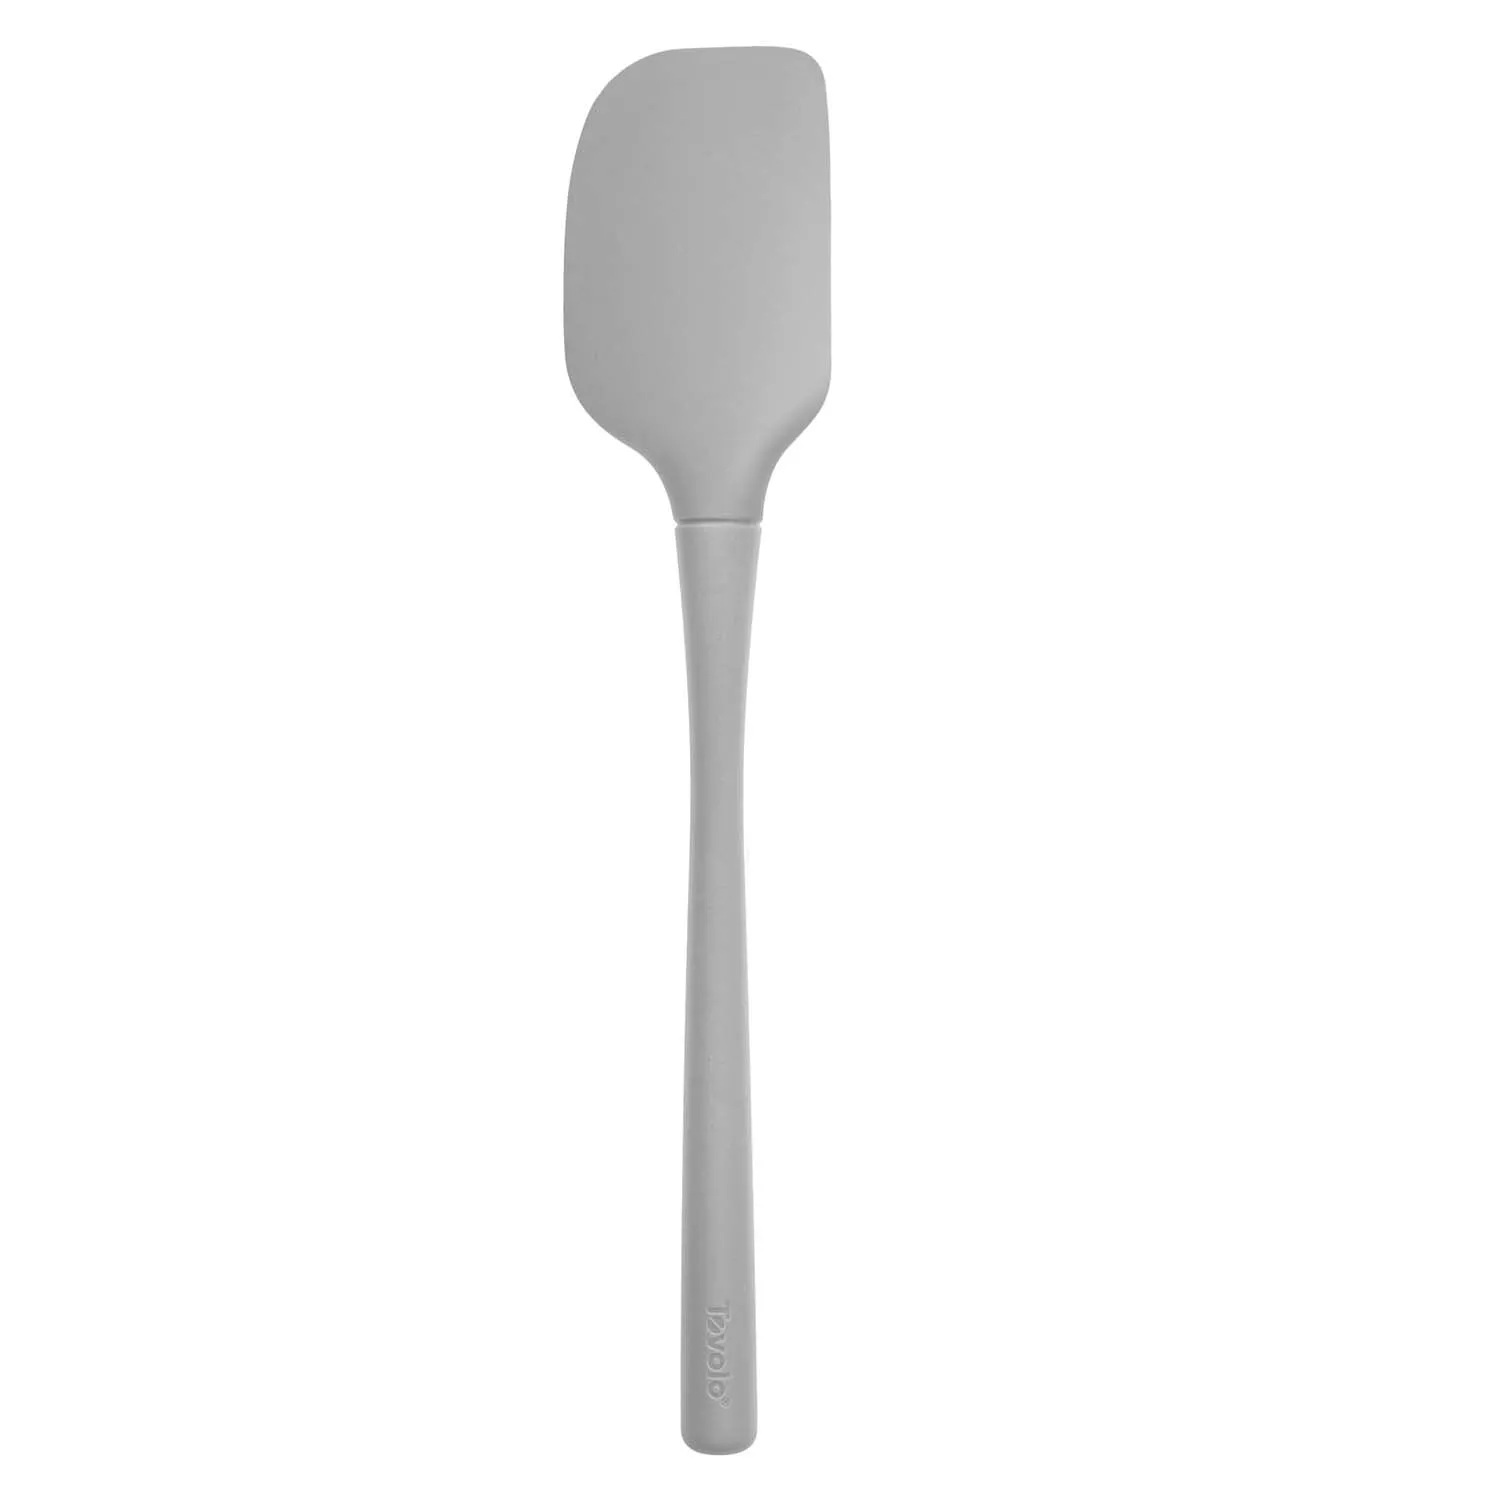 Sur La Table Flex-Core Mini Silicone Spatula and Spatula Spoon, Set of 2